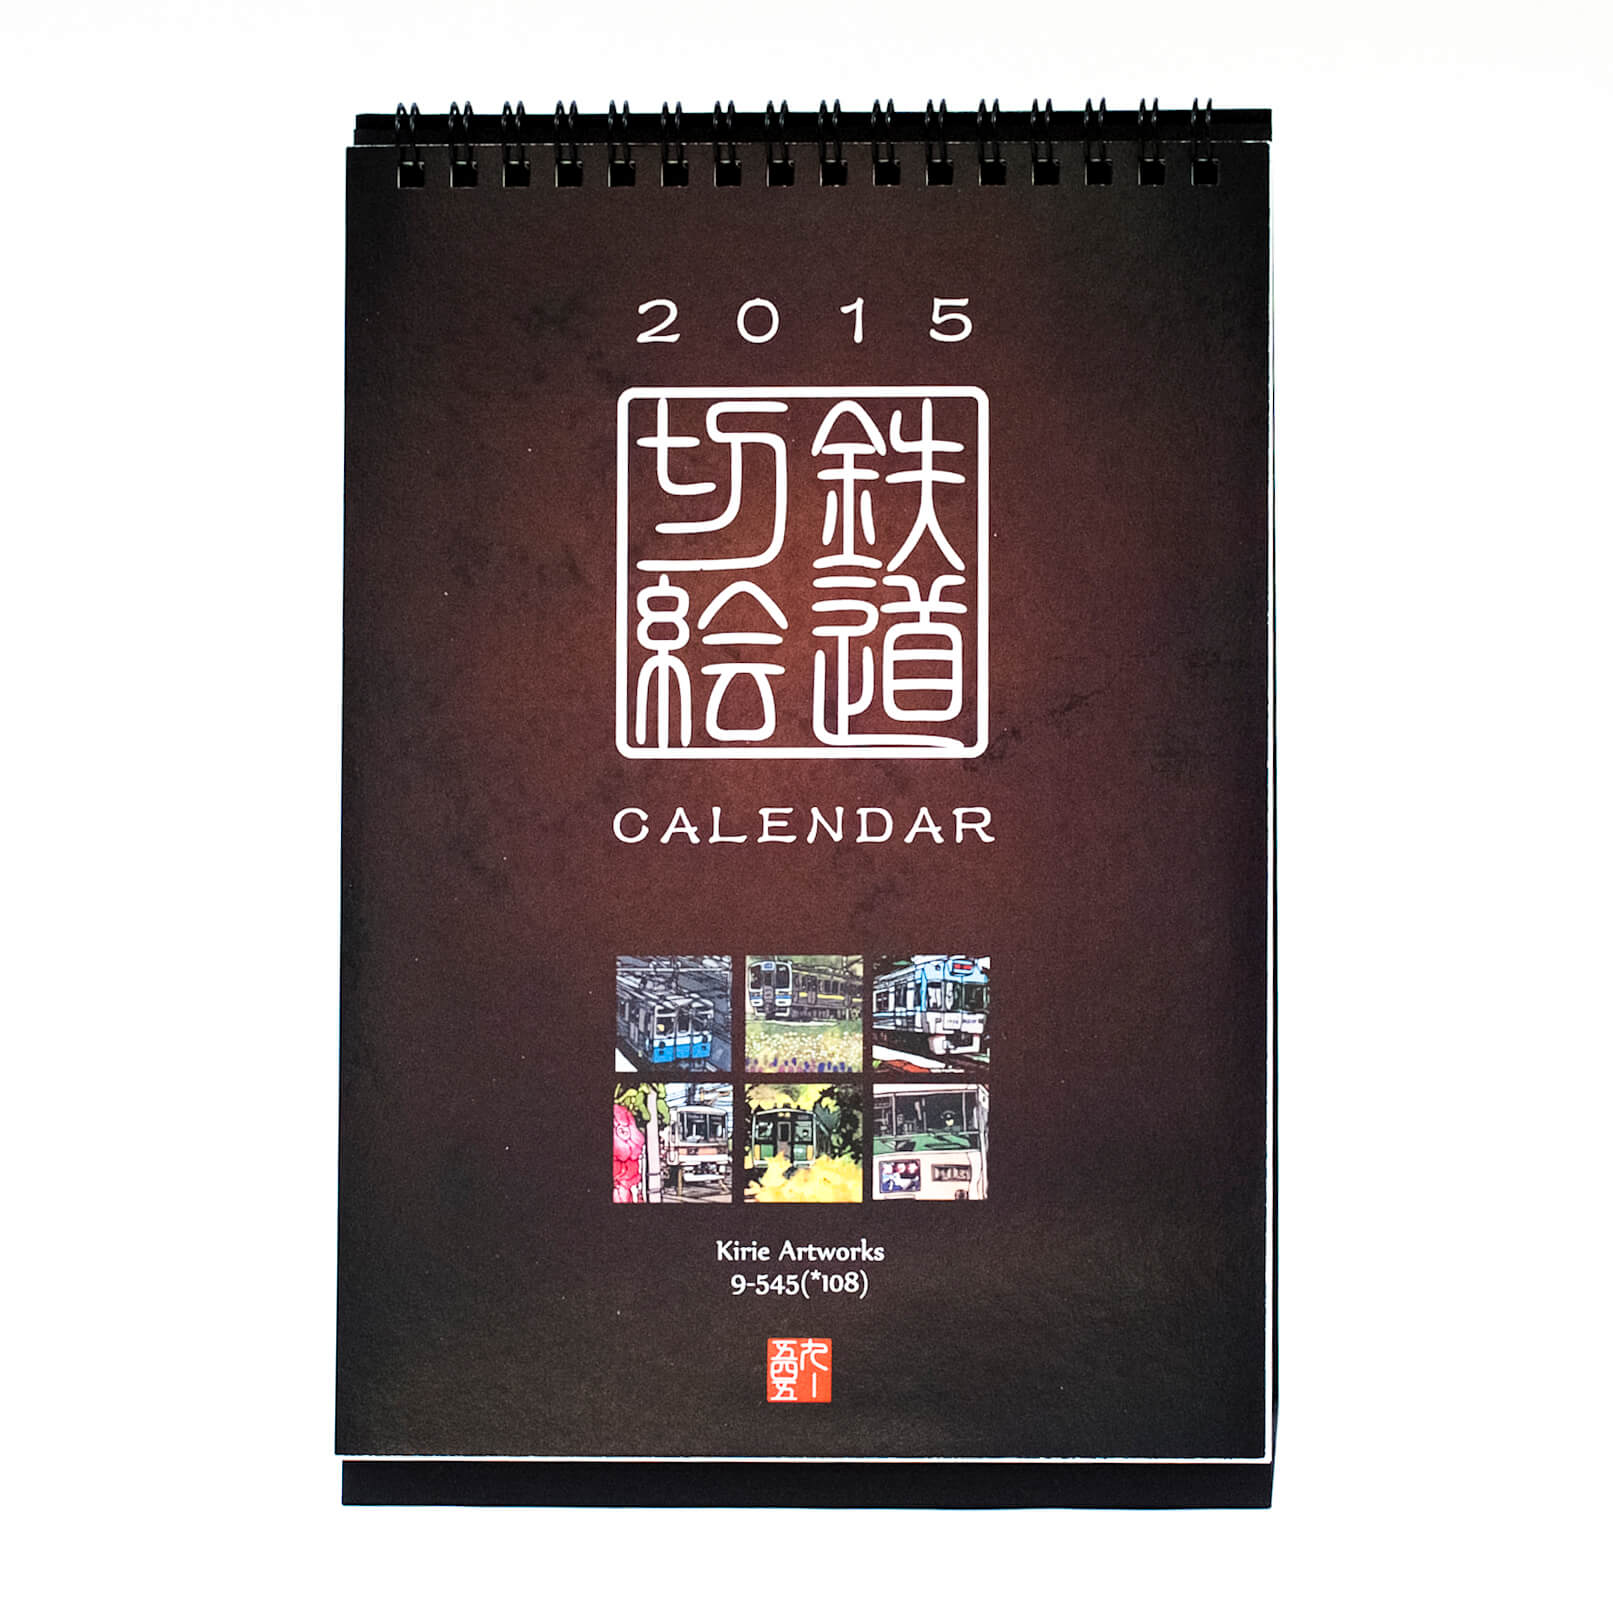 「鶴岡  景子 様」製作のオリジナルカレンダー